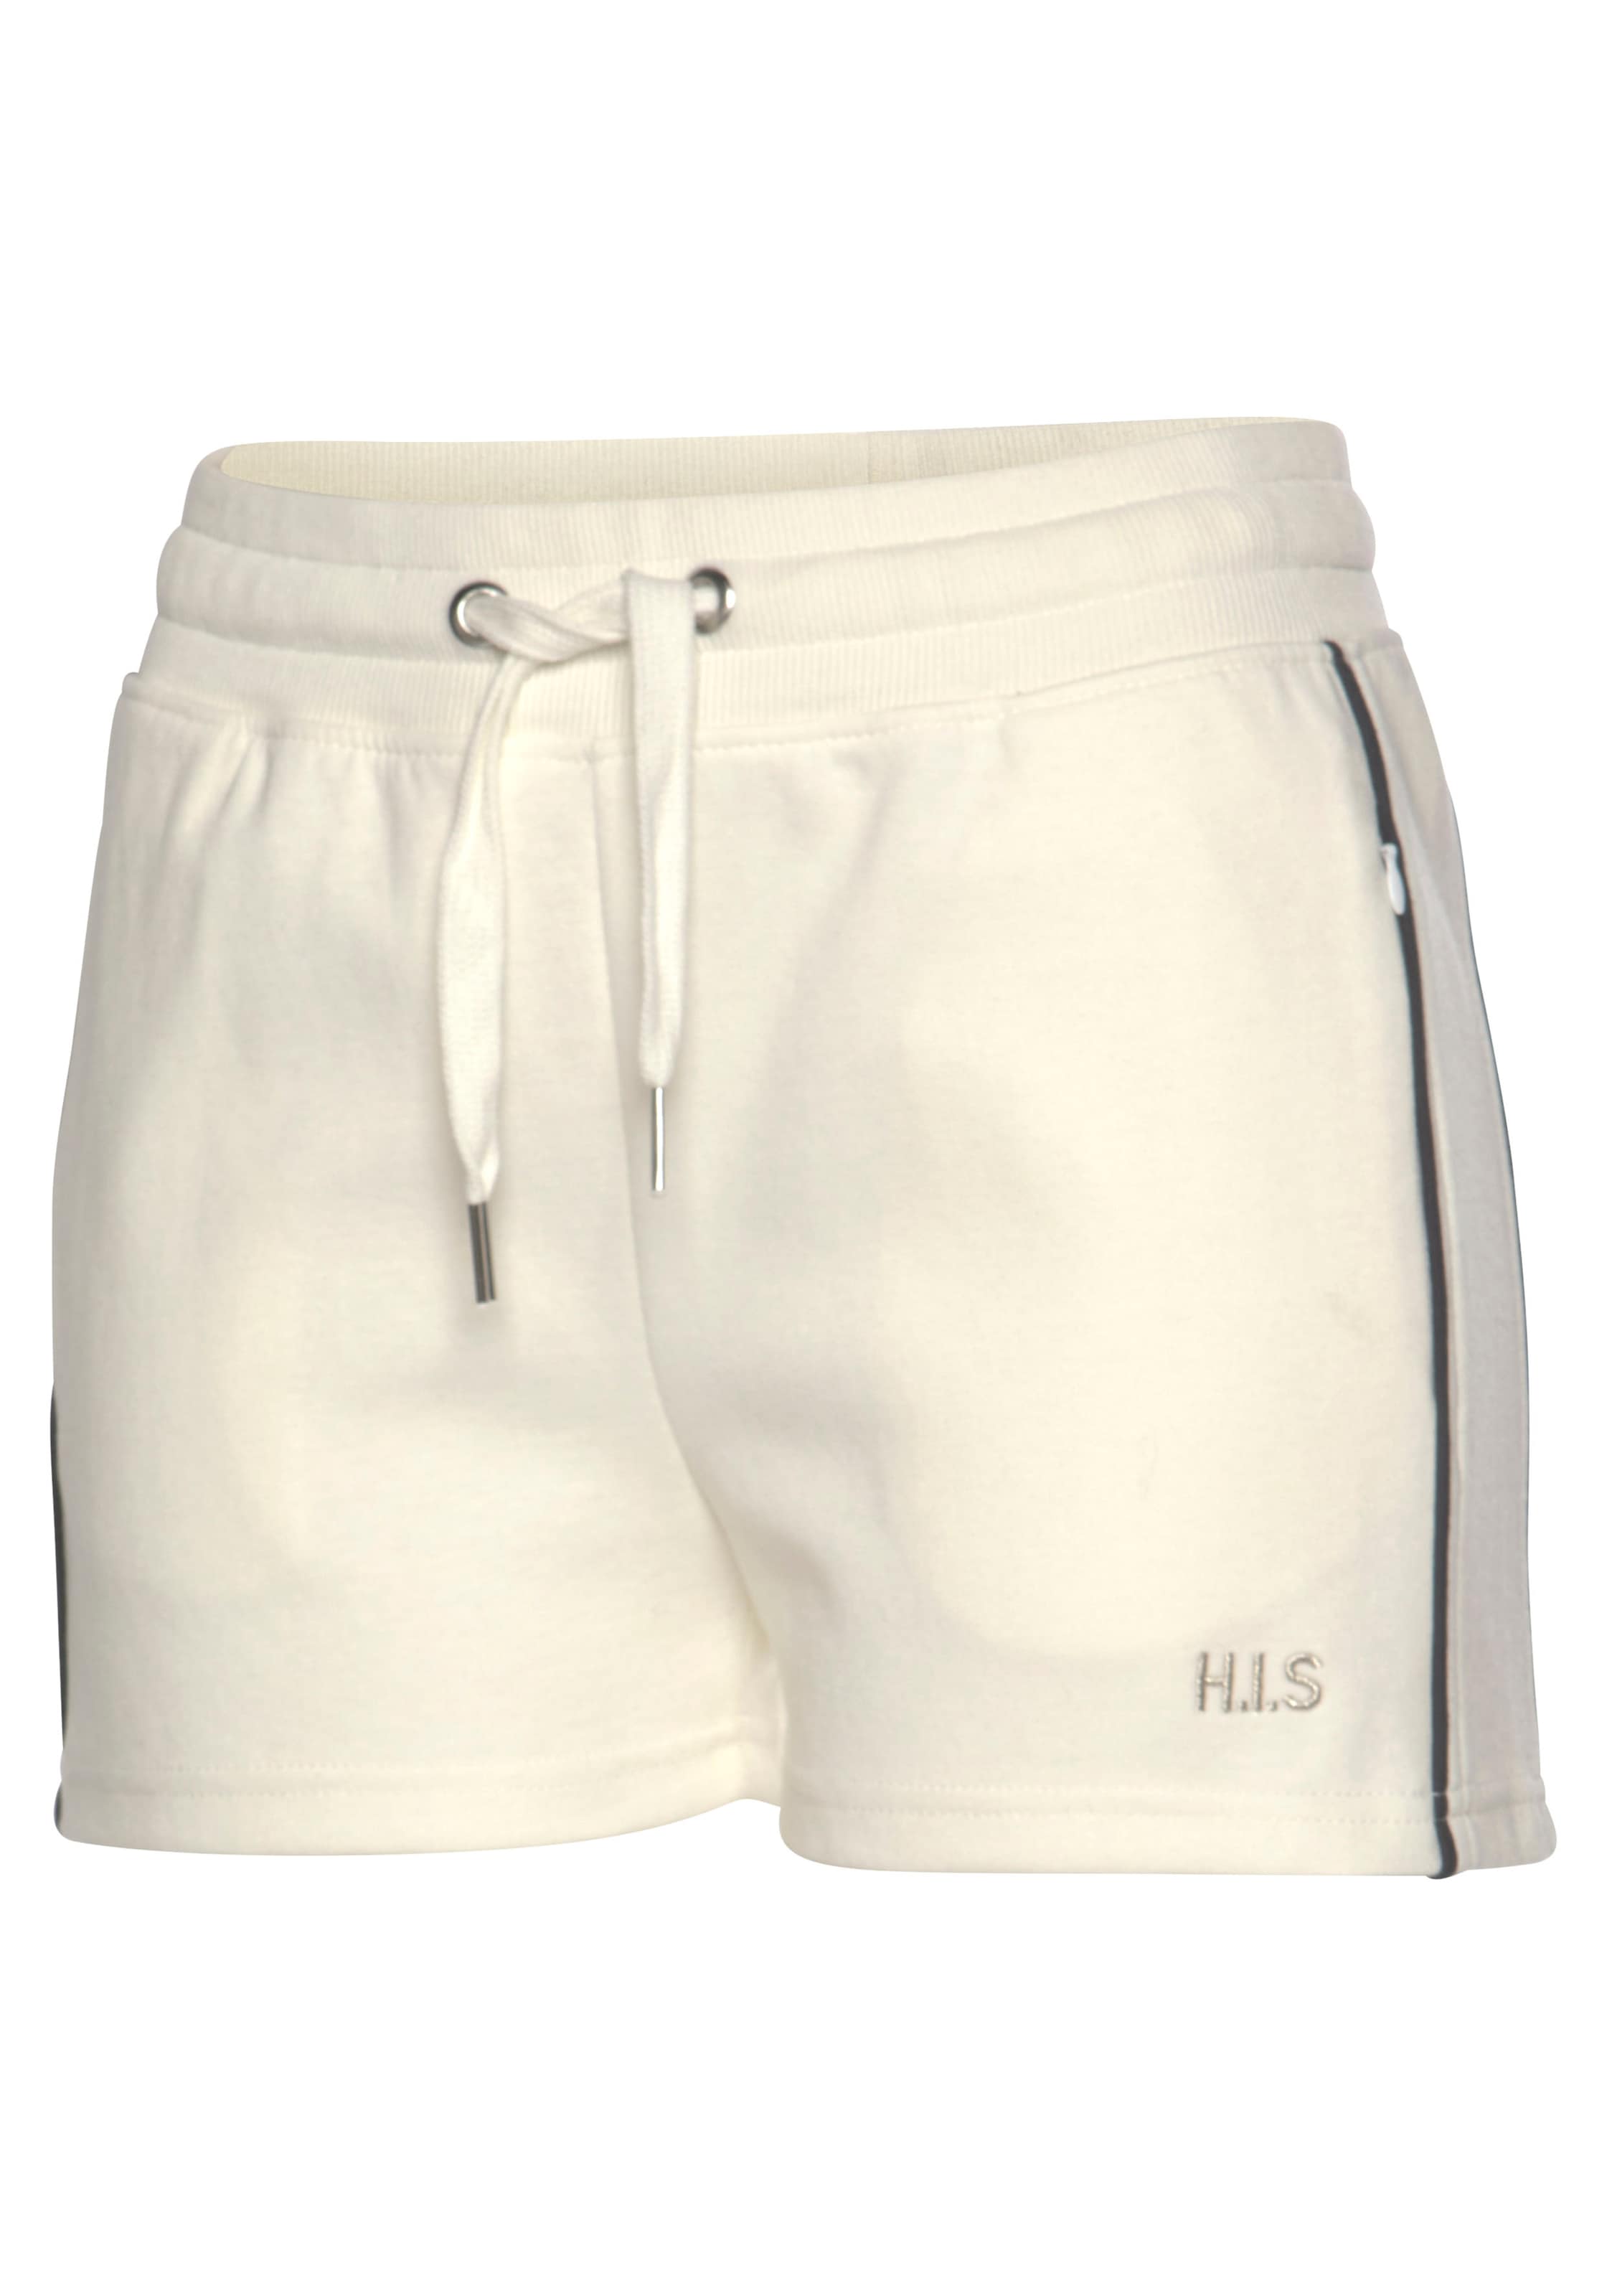 H.I.S Shorts, mit Piping an der Seite